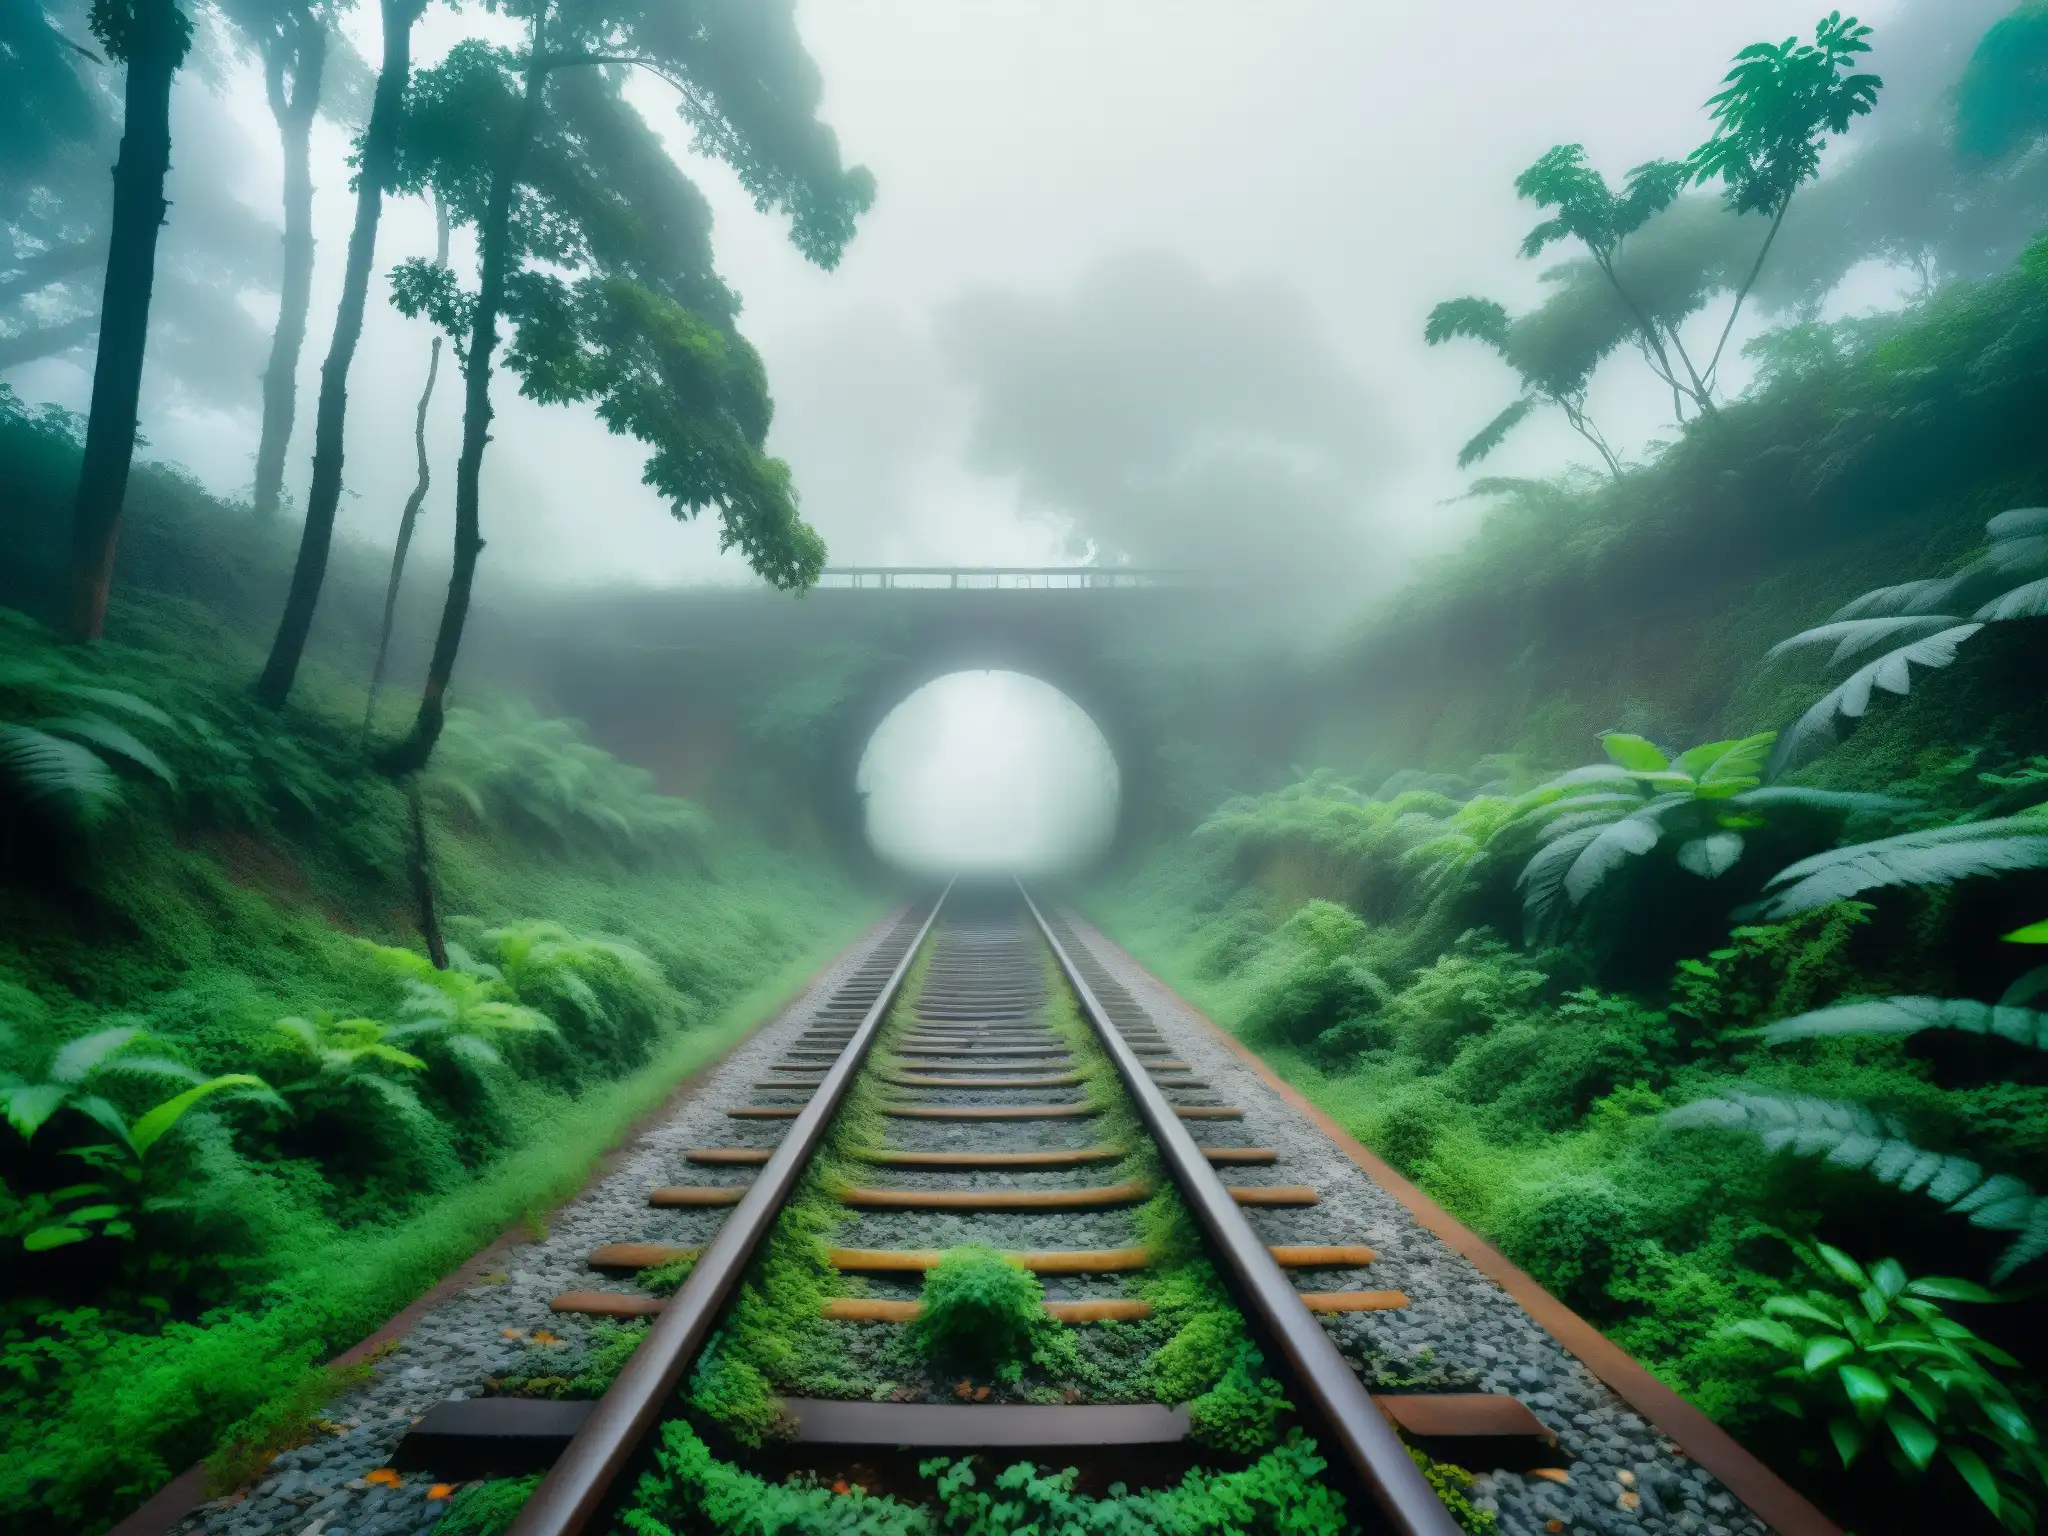 Tren abandonado entre la niebla y la vegetación en la India, evocando misterios y leyendas de trenes fantasma